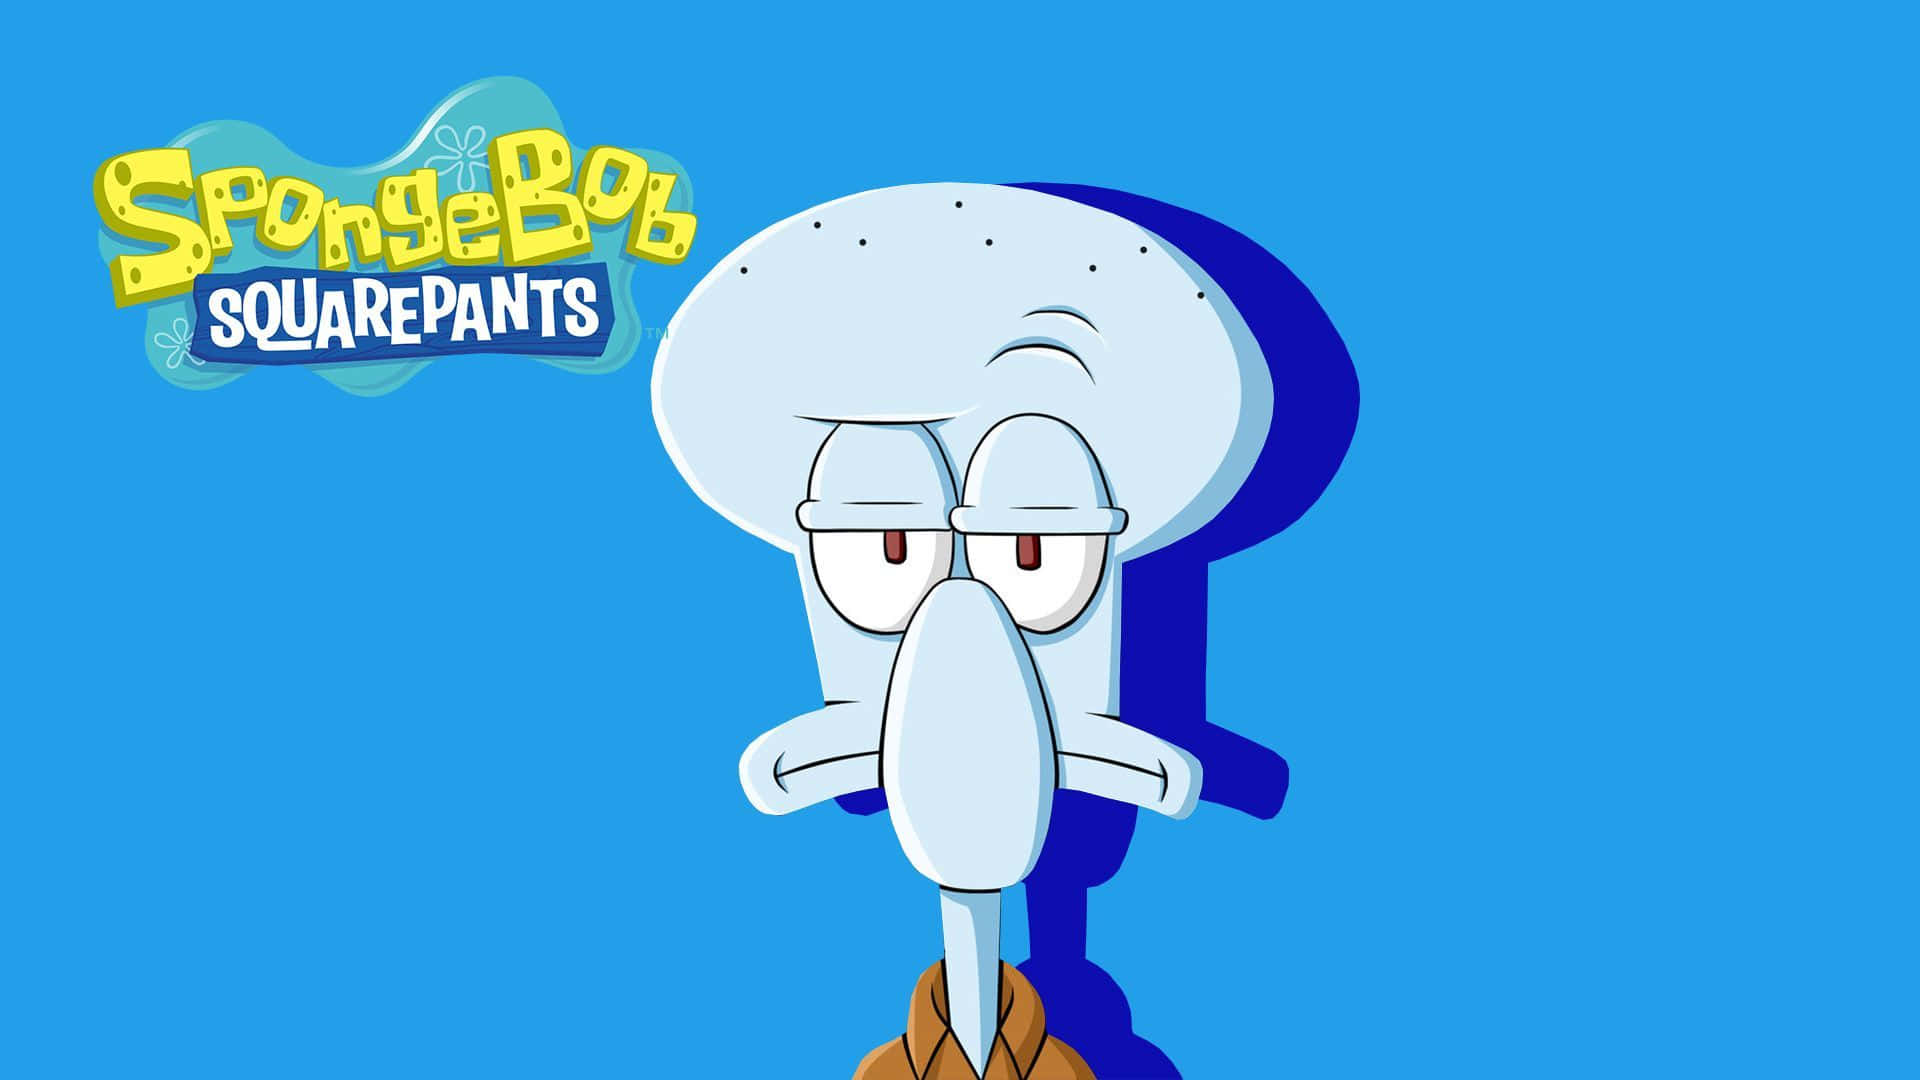 Unpóster Único Y Minimalista De Squidward Tentáculos De Bob Esponja Pantalones Cuadrados. Fondo de pantalla